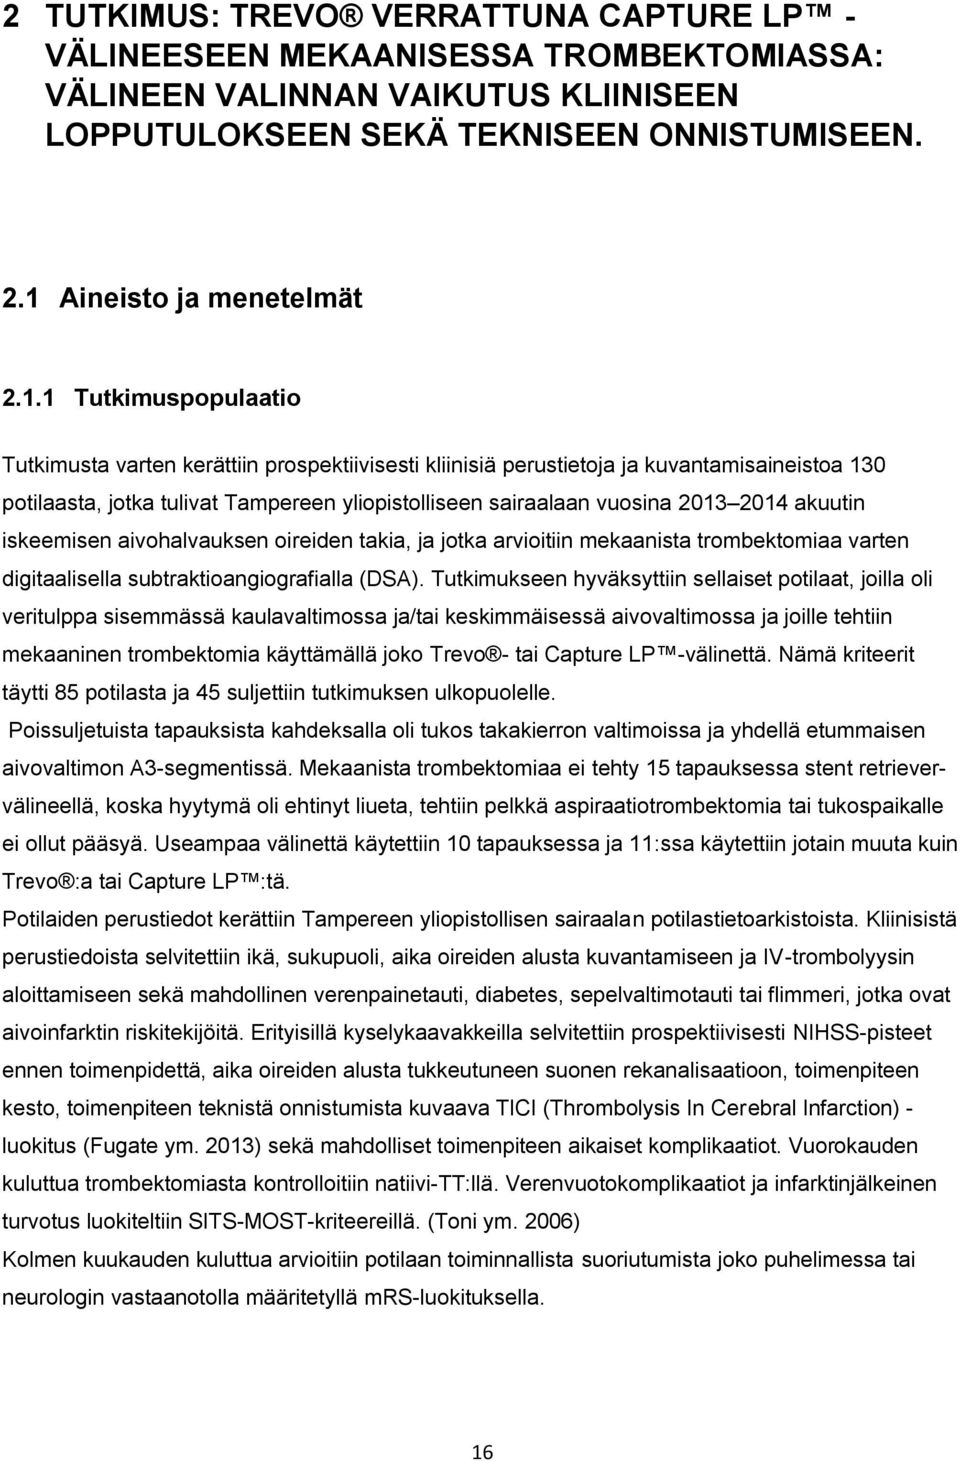 1 Tutkimuspopulaatio Tutkimusta varten kerättiin prospektiivisesti kliinisiä perustietoja ja kuvantamisaineistoa 130 potilaasta, jotka tulivat Tampereen yliopistolliseen sairaalaan vuosina 2013 2014